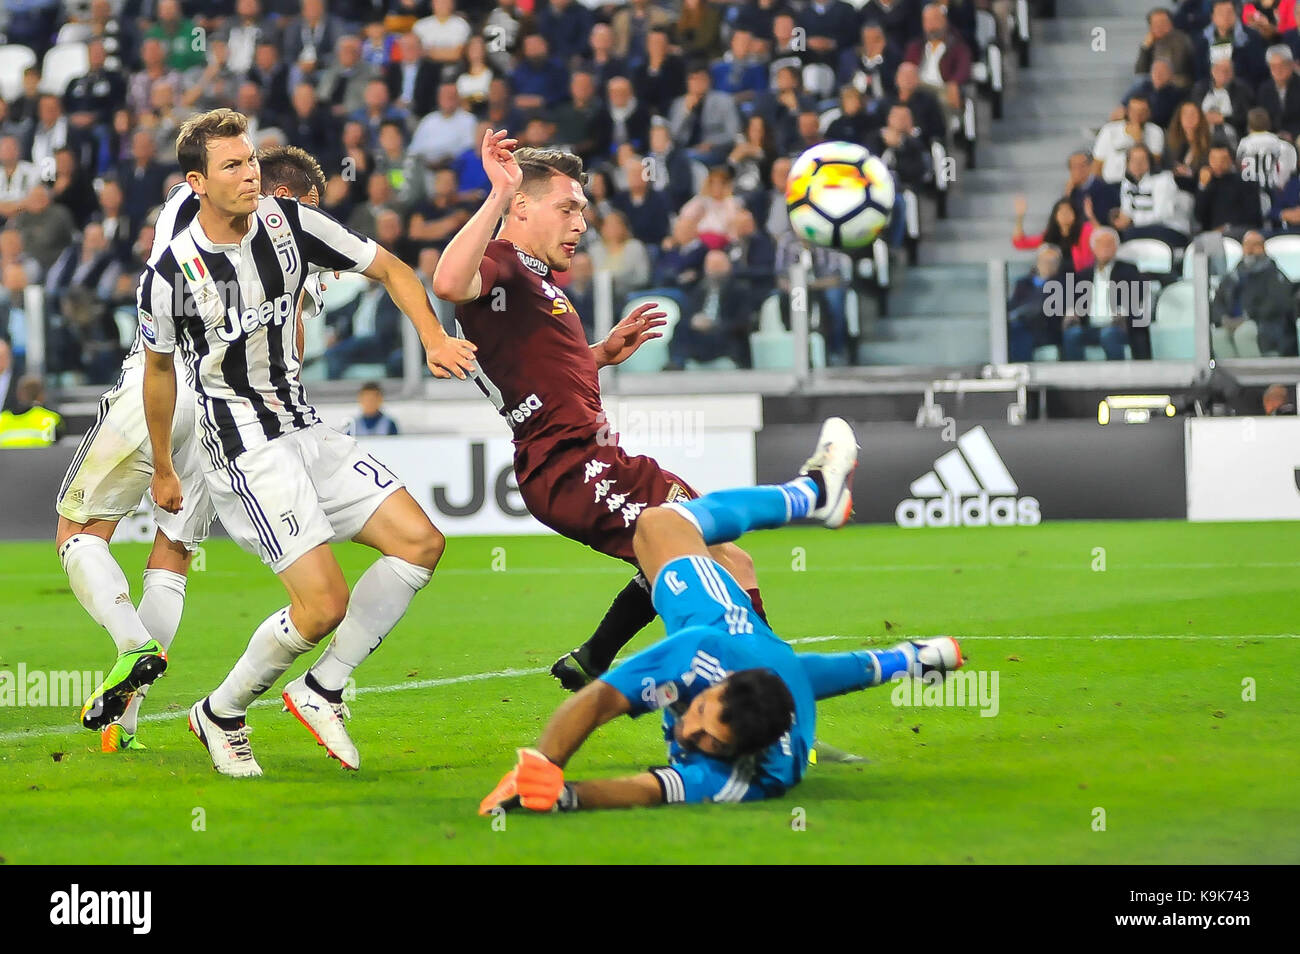 Andrea belotti (torino fc) au cours de la série d'un match de football entre la Juventus Turin et au fc stade Allianz le 23 septembre 2017 à Turin, Italie. Banque D'Images